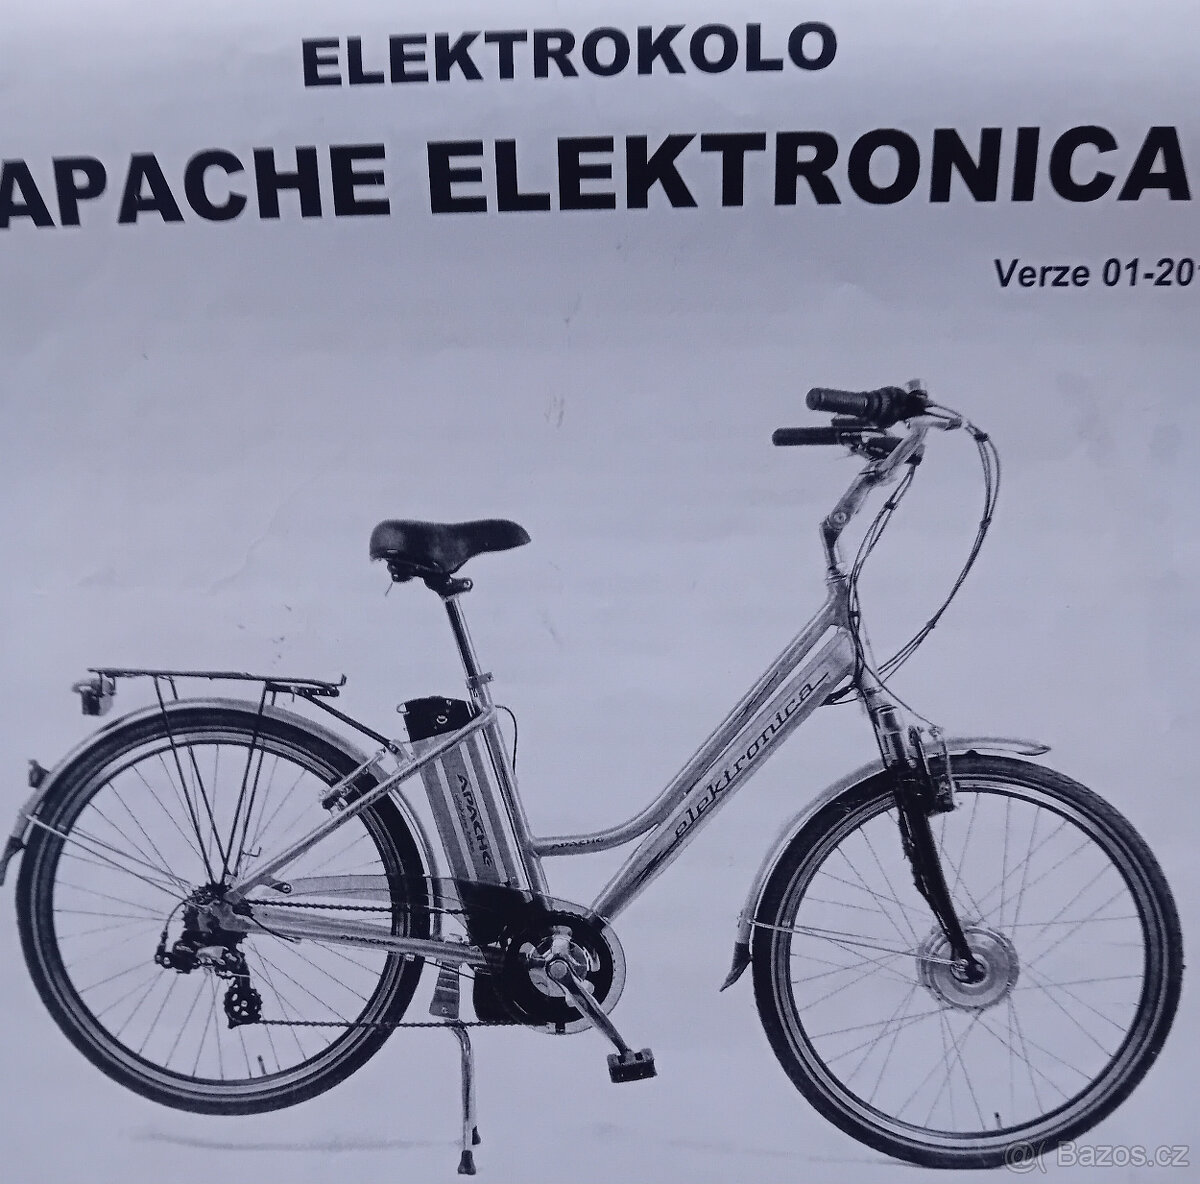 Elektrokolo APACHE